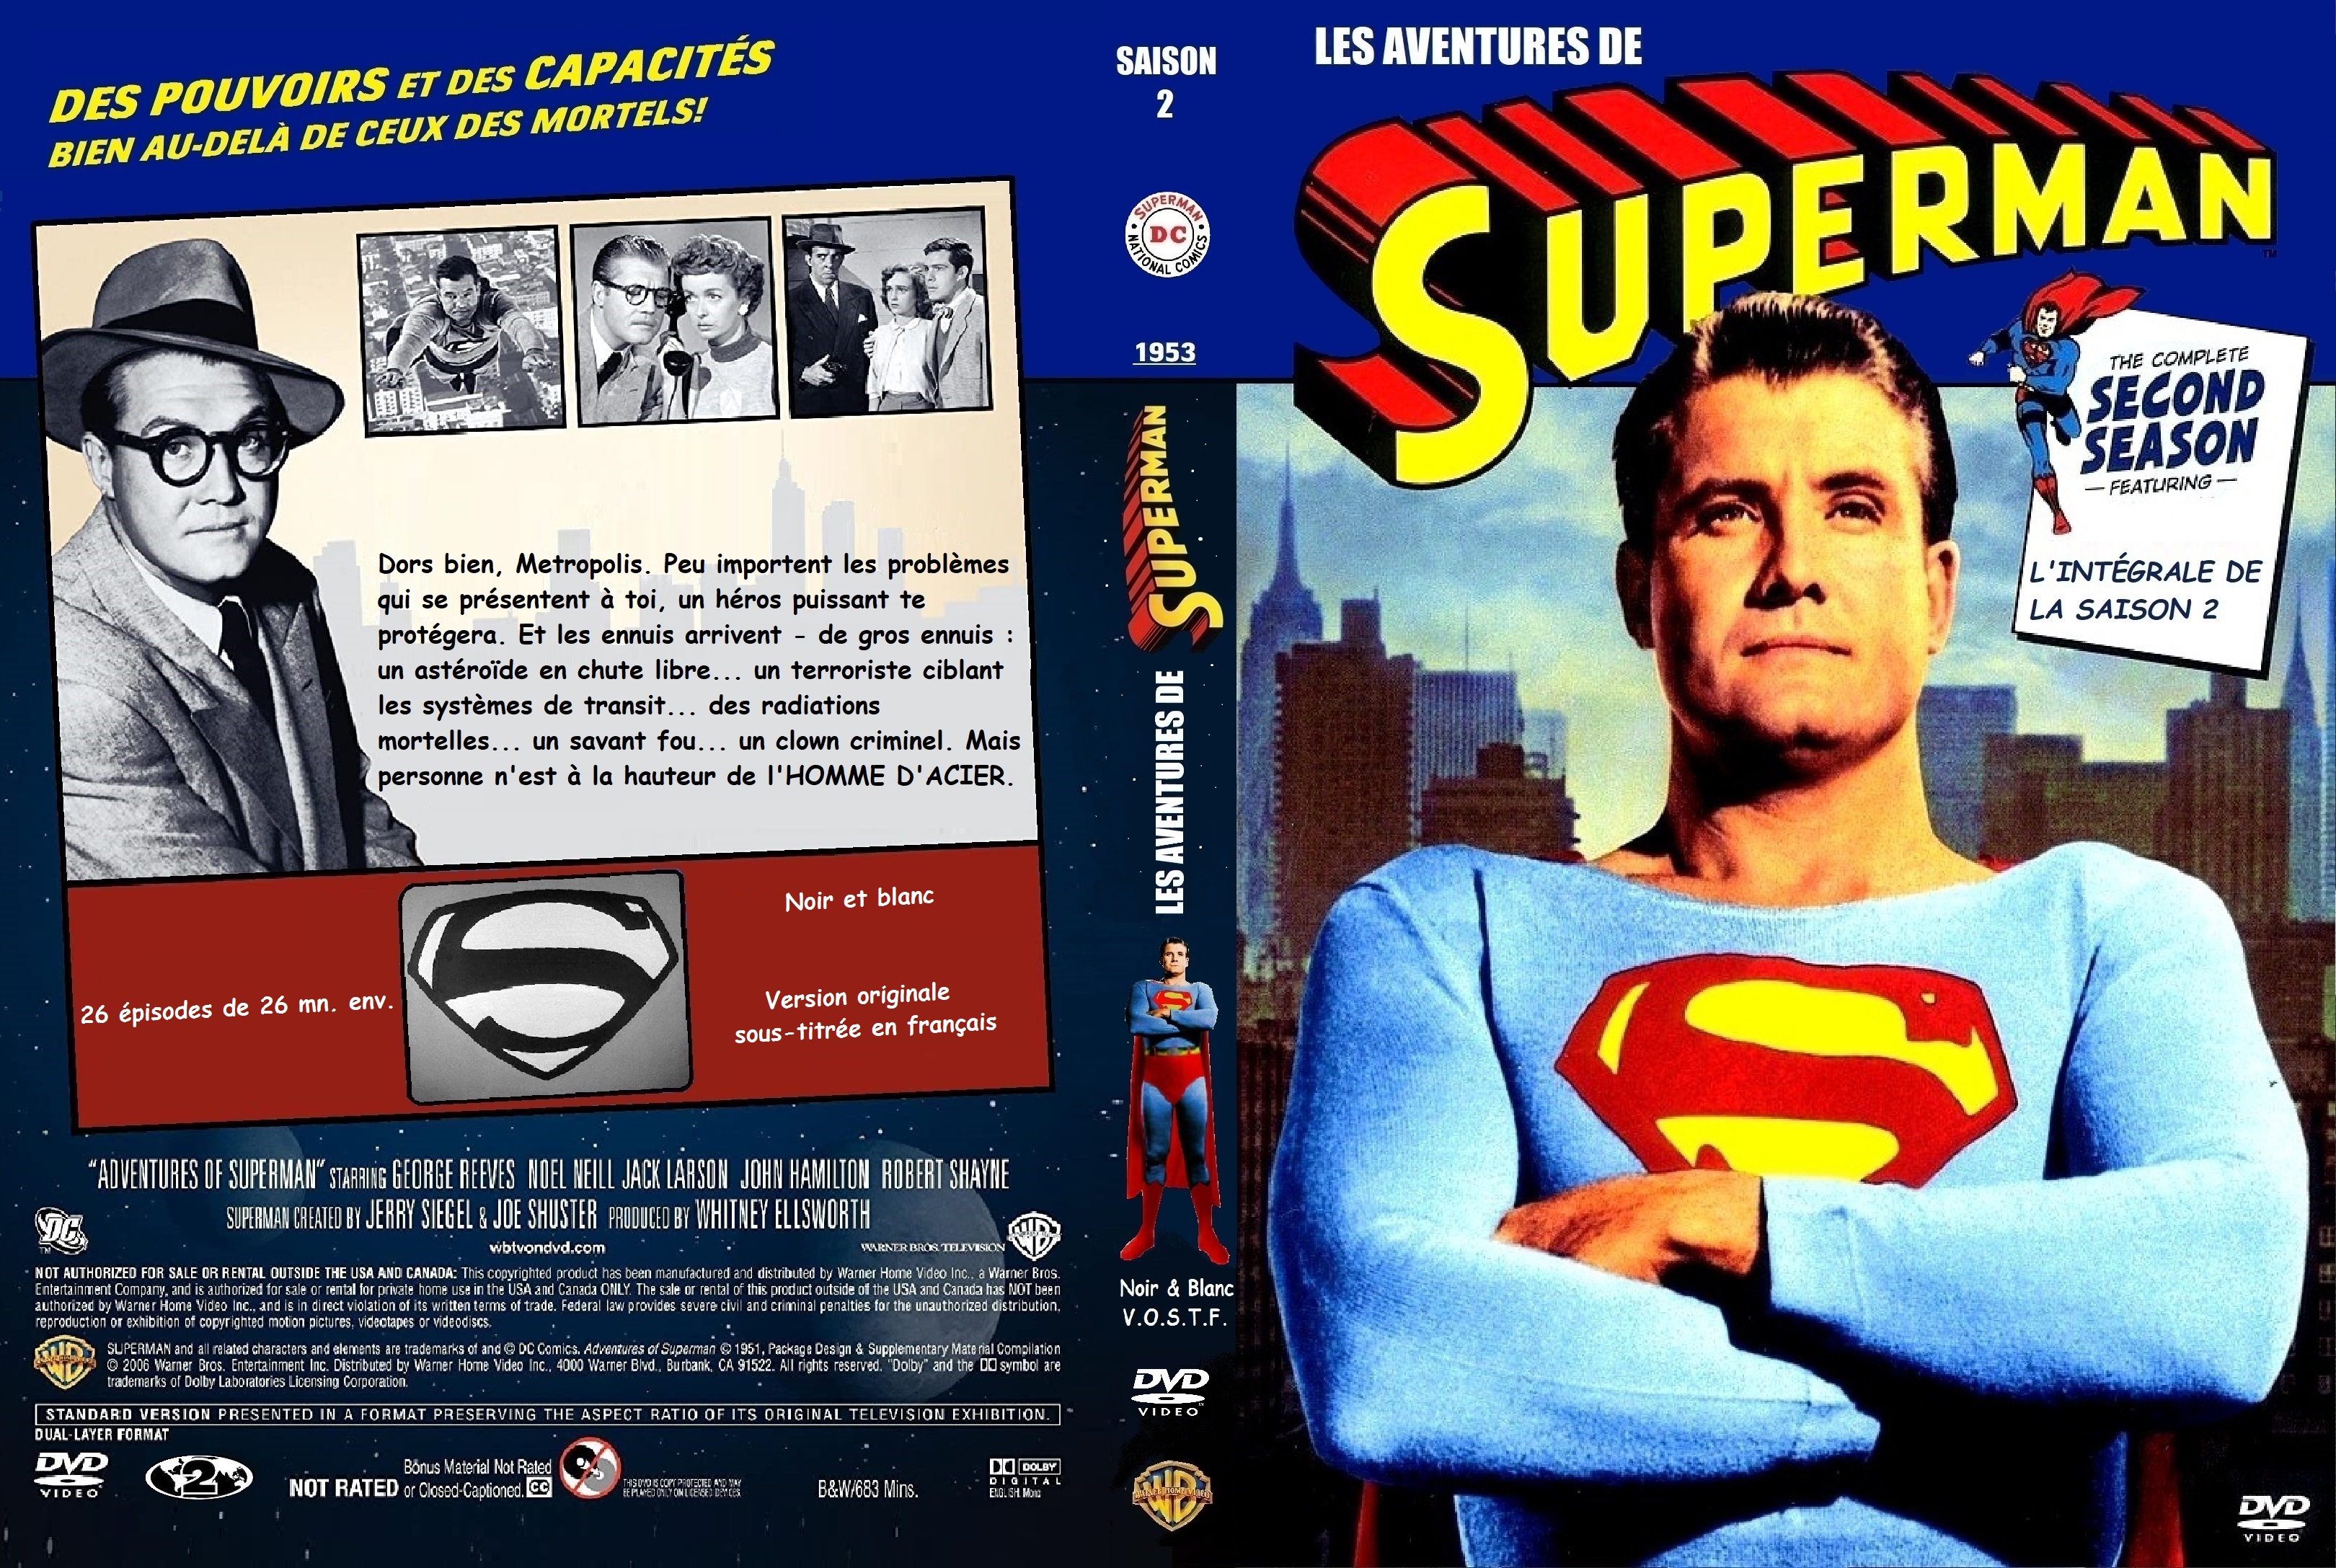 Jaquette DVD Les aventures de Superman saison 2 (1953) custom